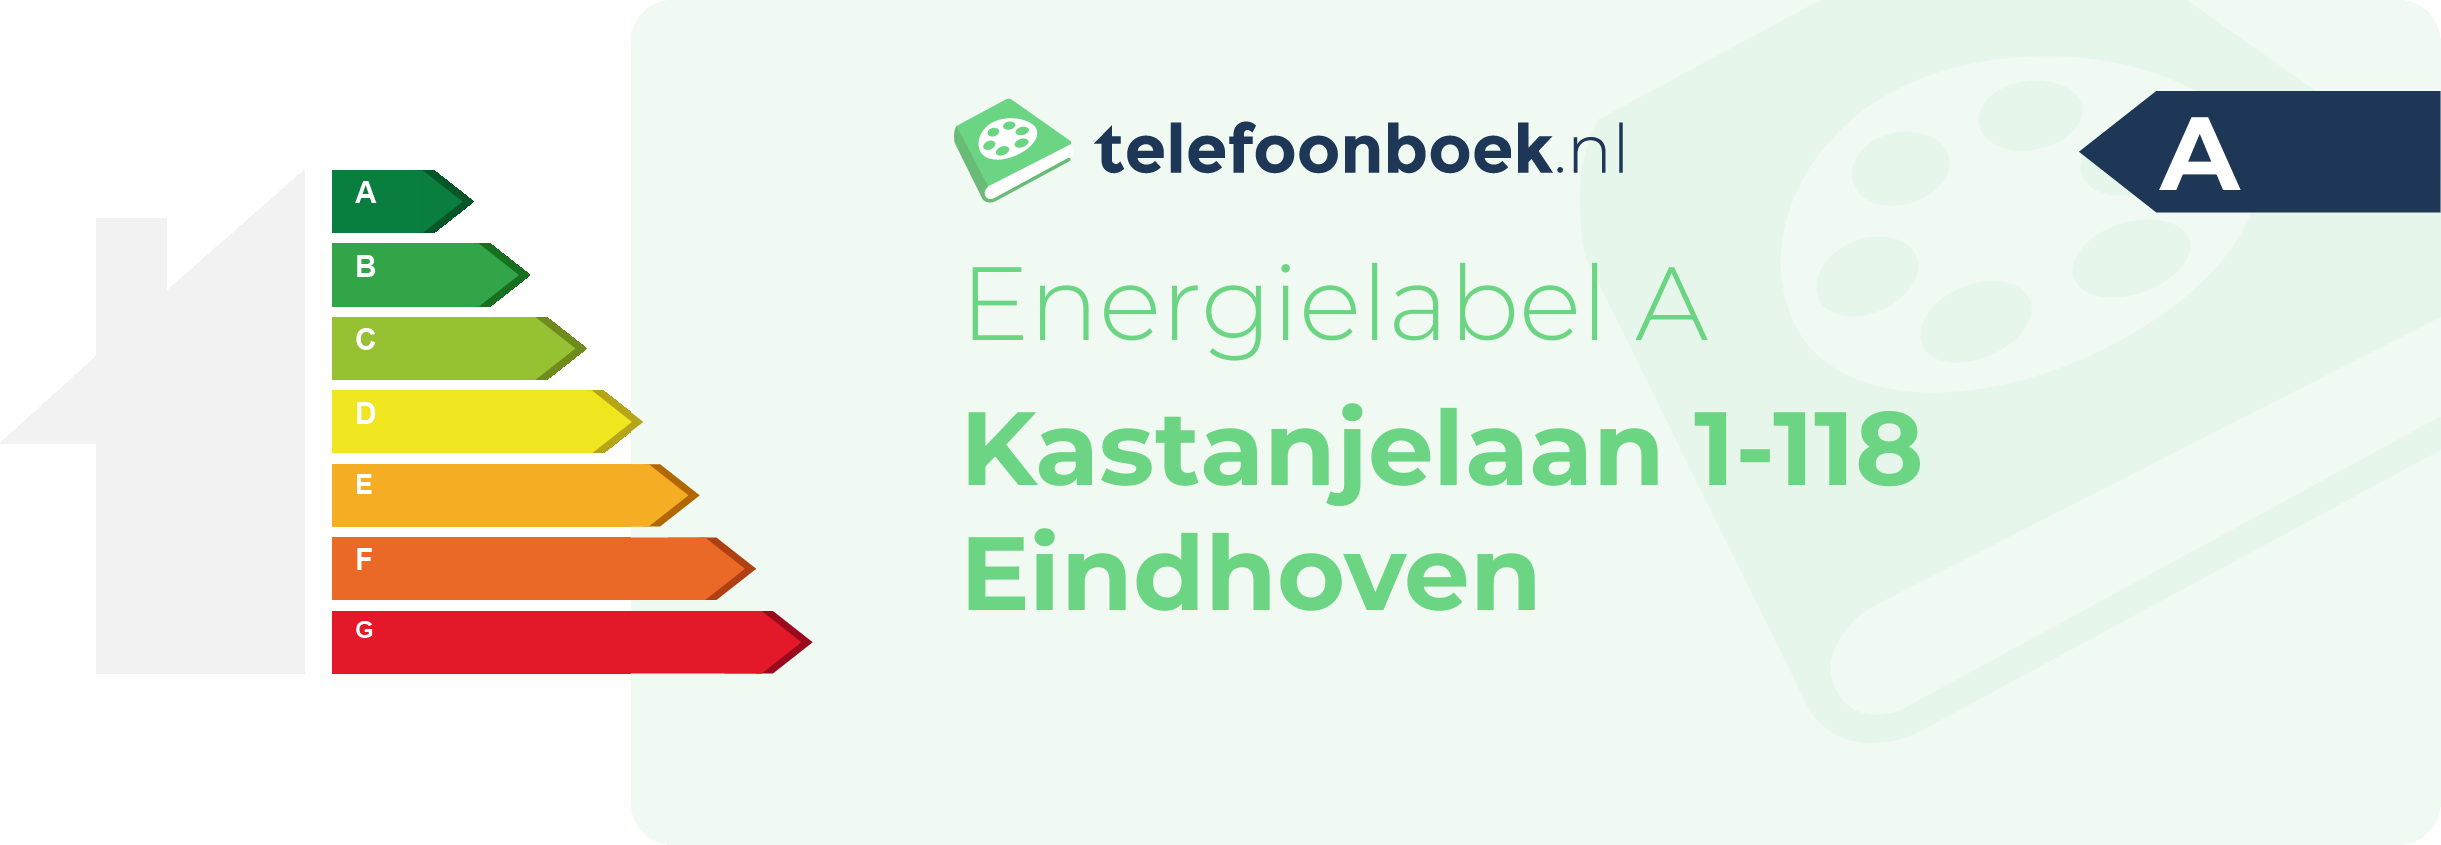 Energielabel Kastanjelaan 1-118 Eindhoven